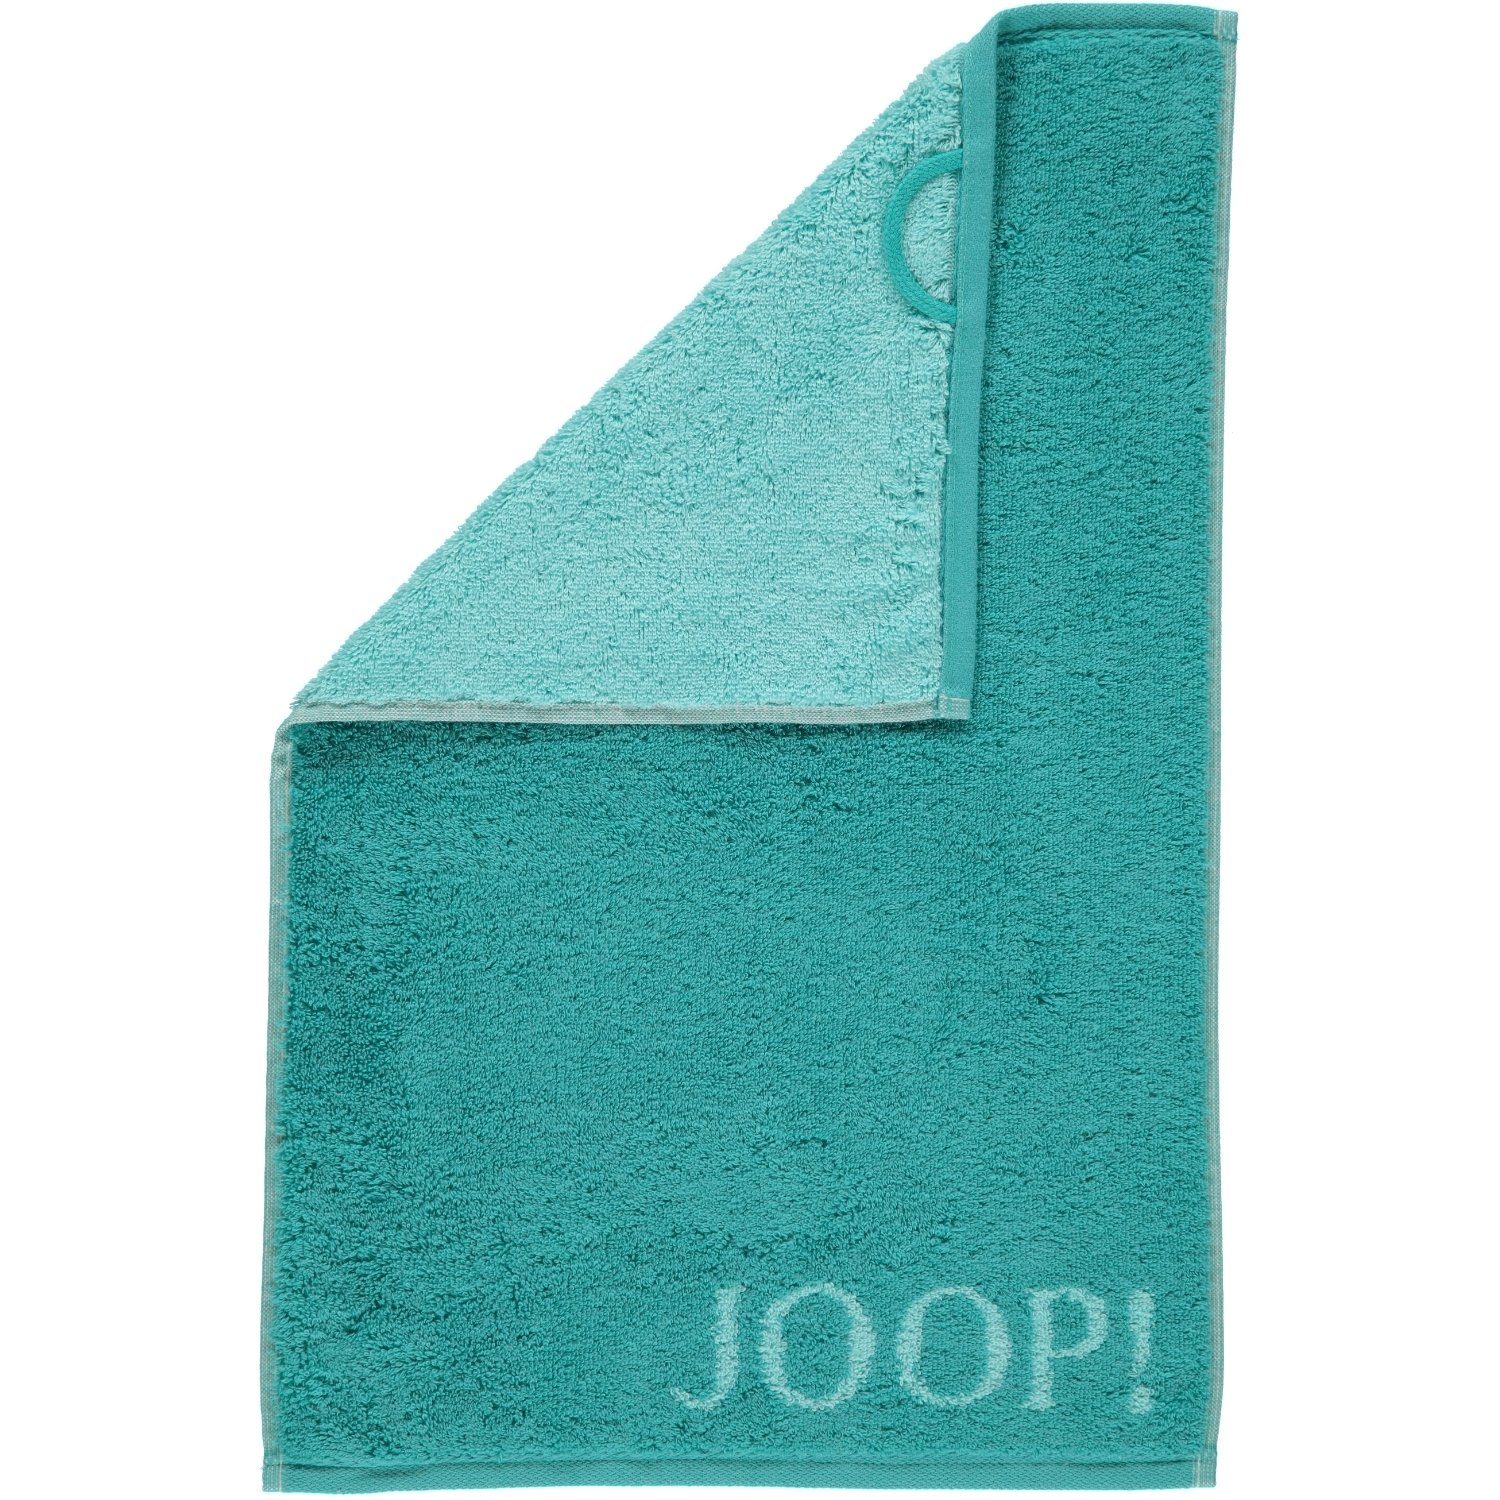 40 Joop! - 1600, Handtücher Baumwolle 100% Classic türkis Doubleface